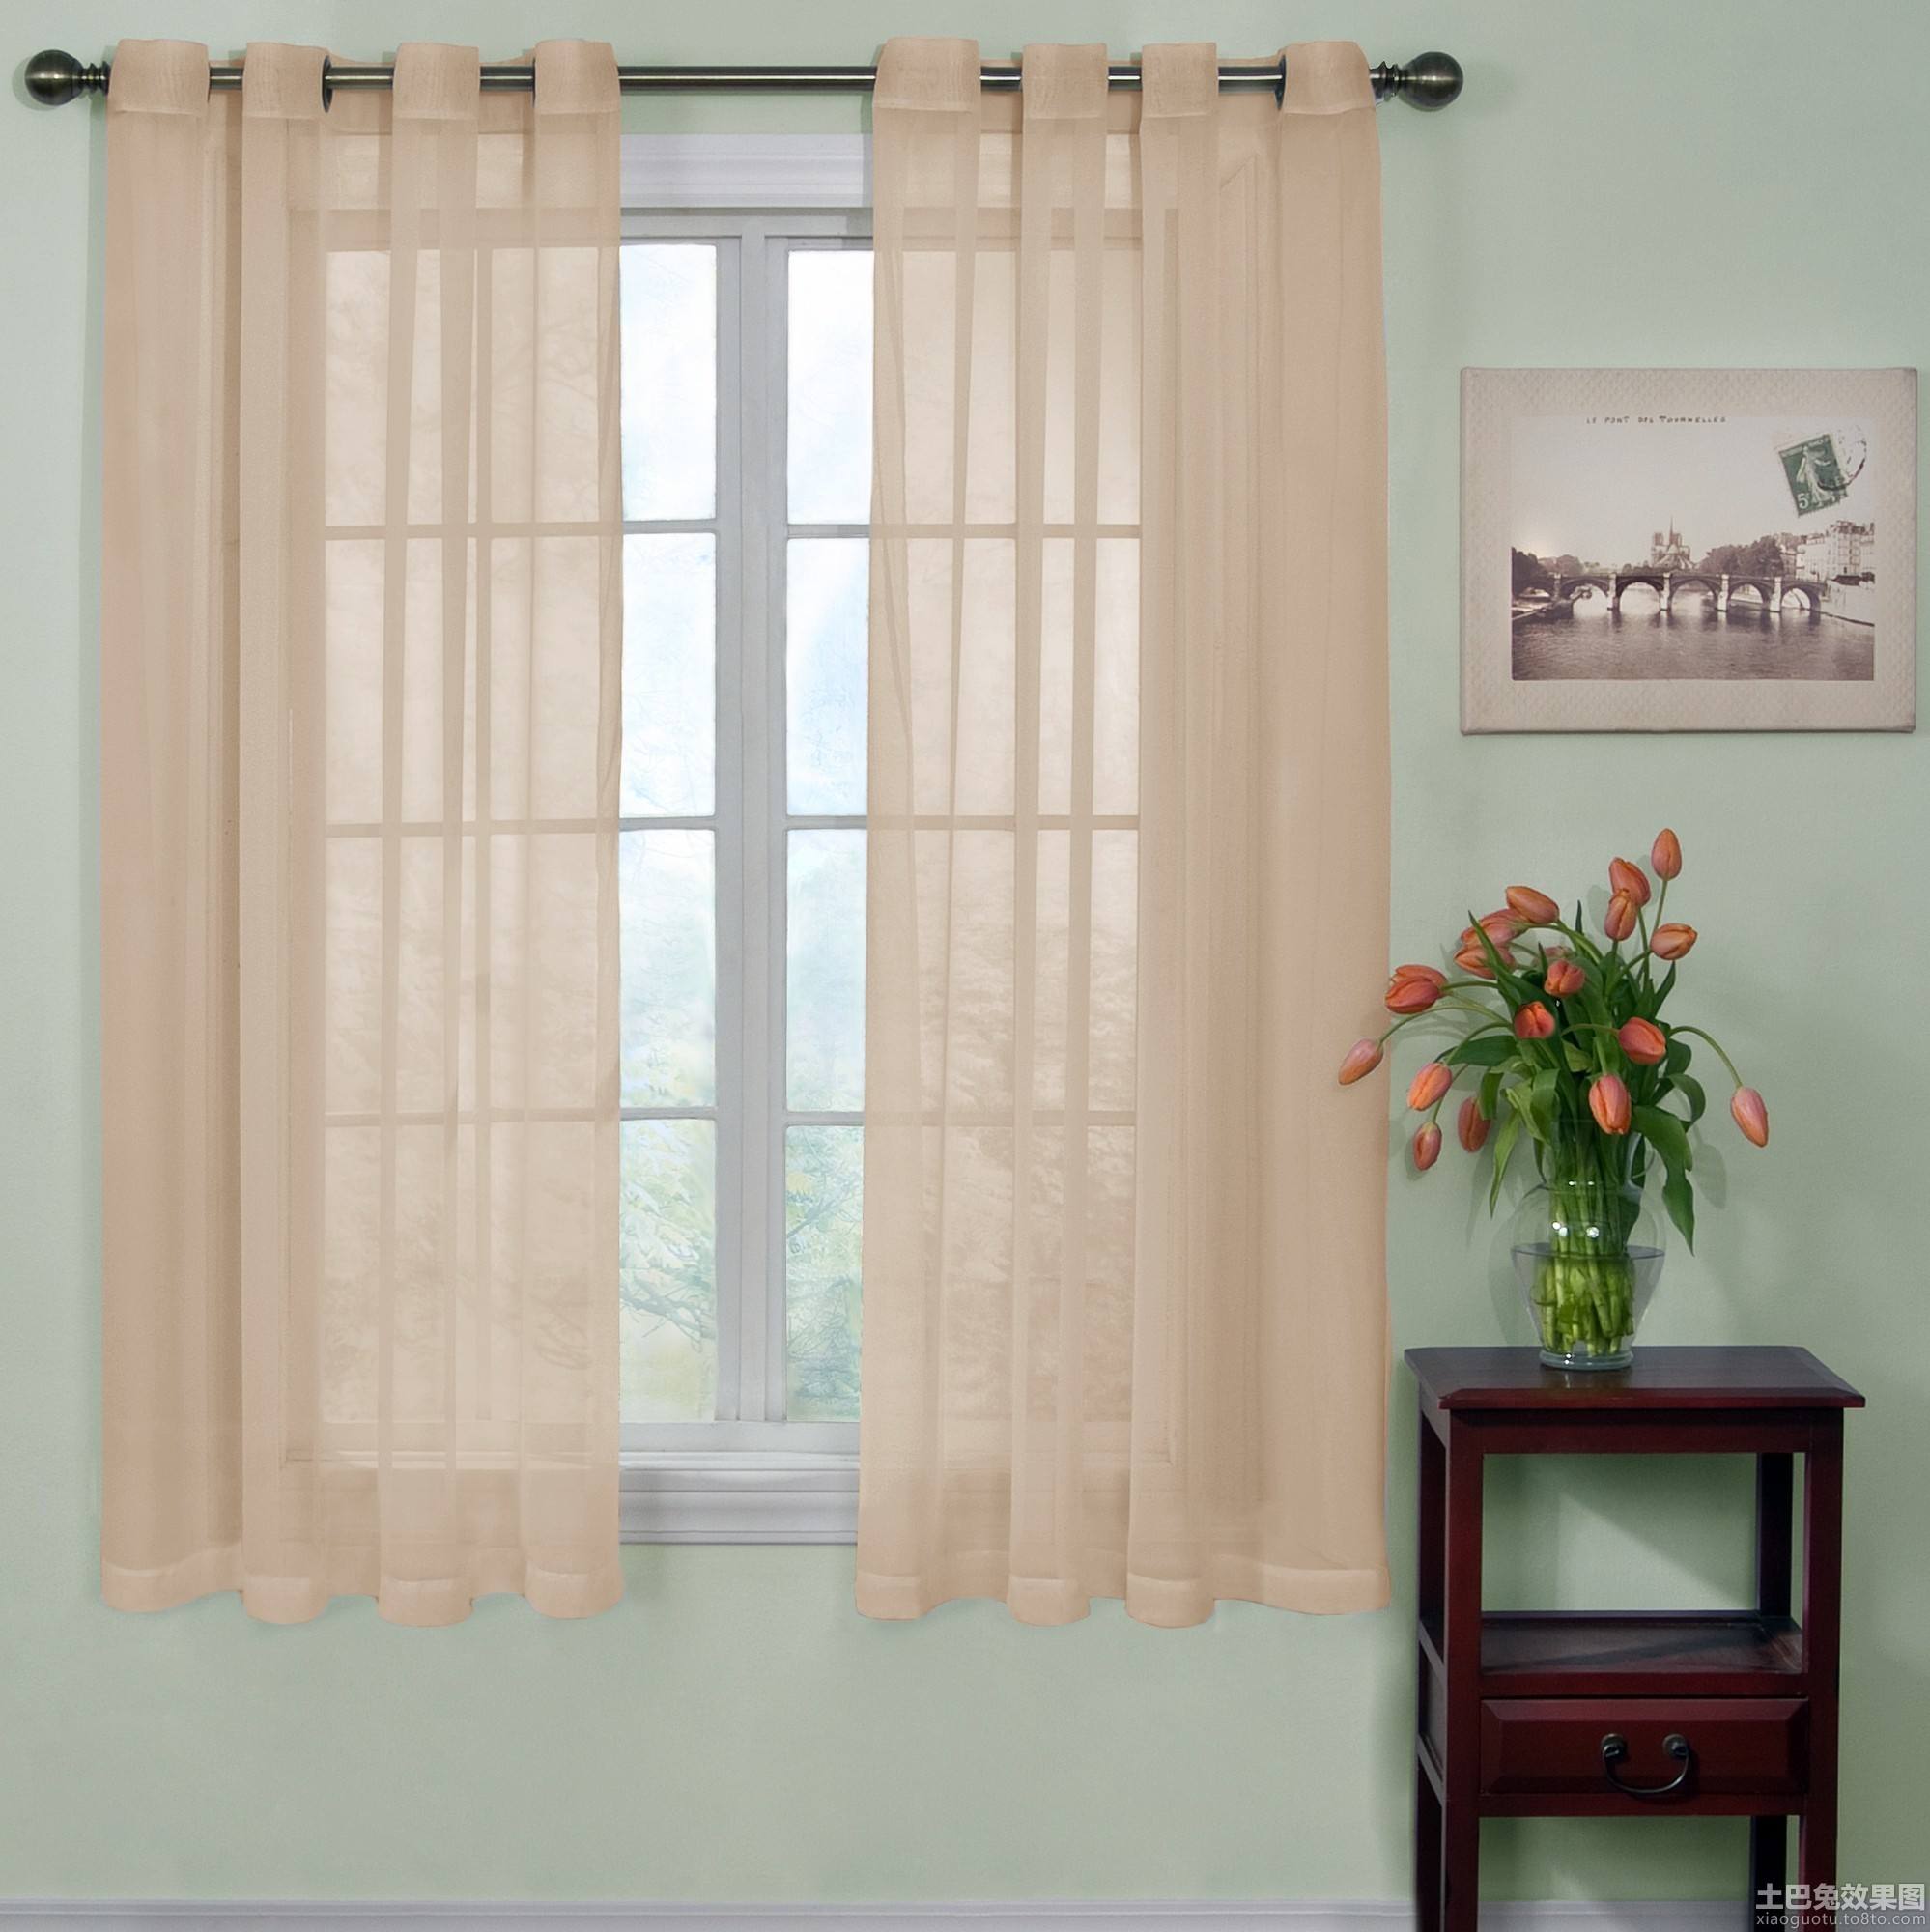 窗帘效果图大全 最适合家居的窗帘有哪些